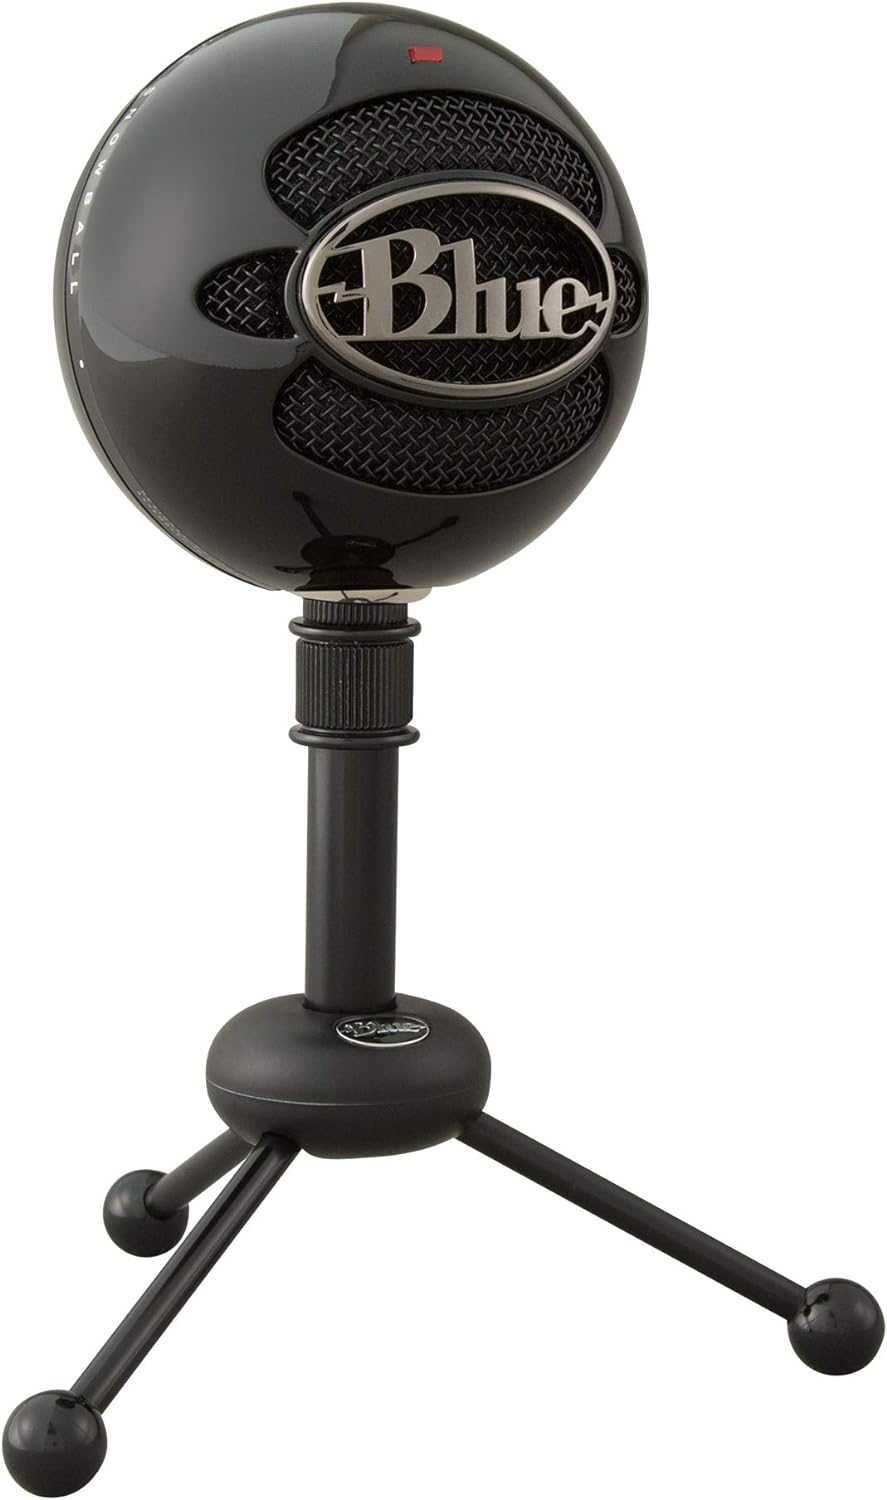 А28market предлагает - новый usb микрофон SNOWBALL